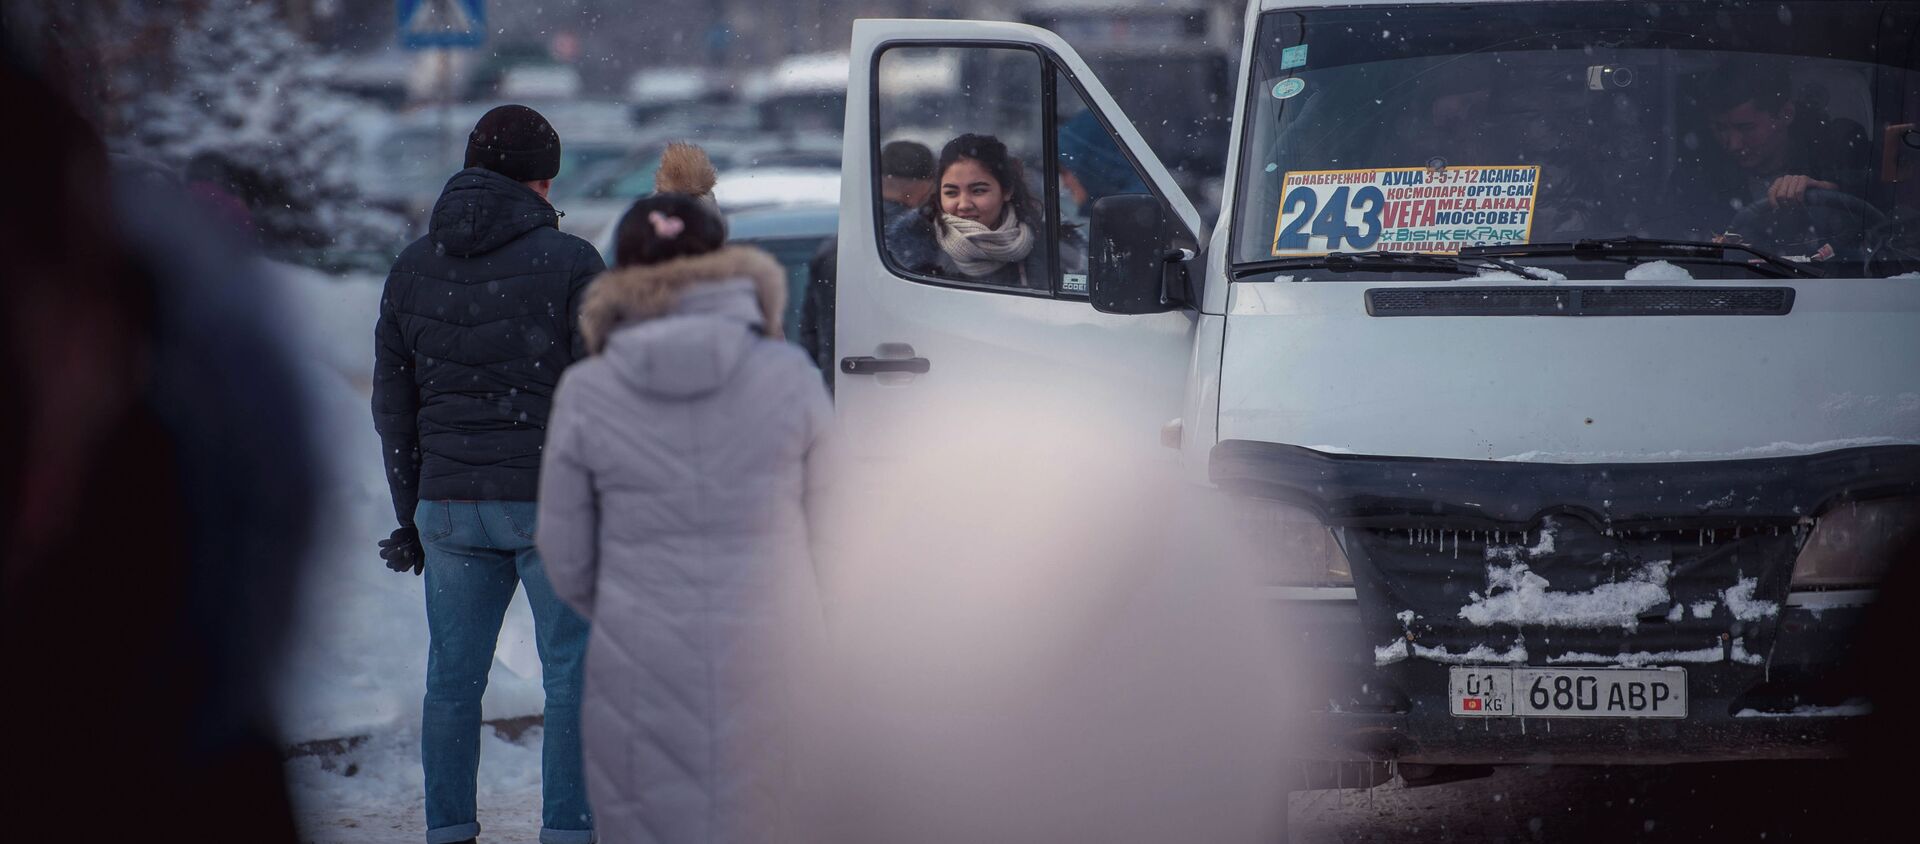 Люди на остановке садятся на маршрутное такси. Архивное фото - Sputnik Кыргызстан, 1920, 07.12.2019